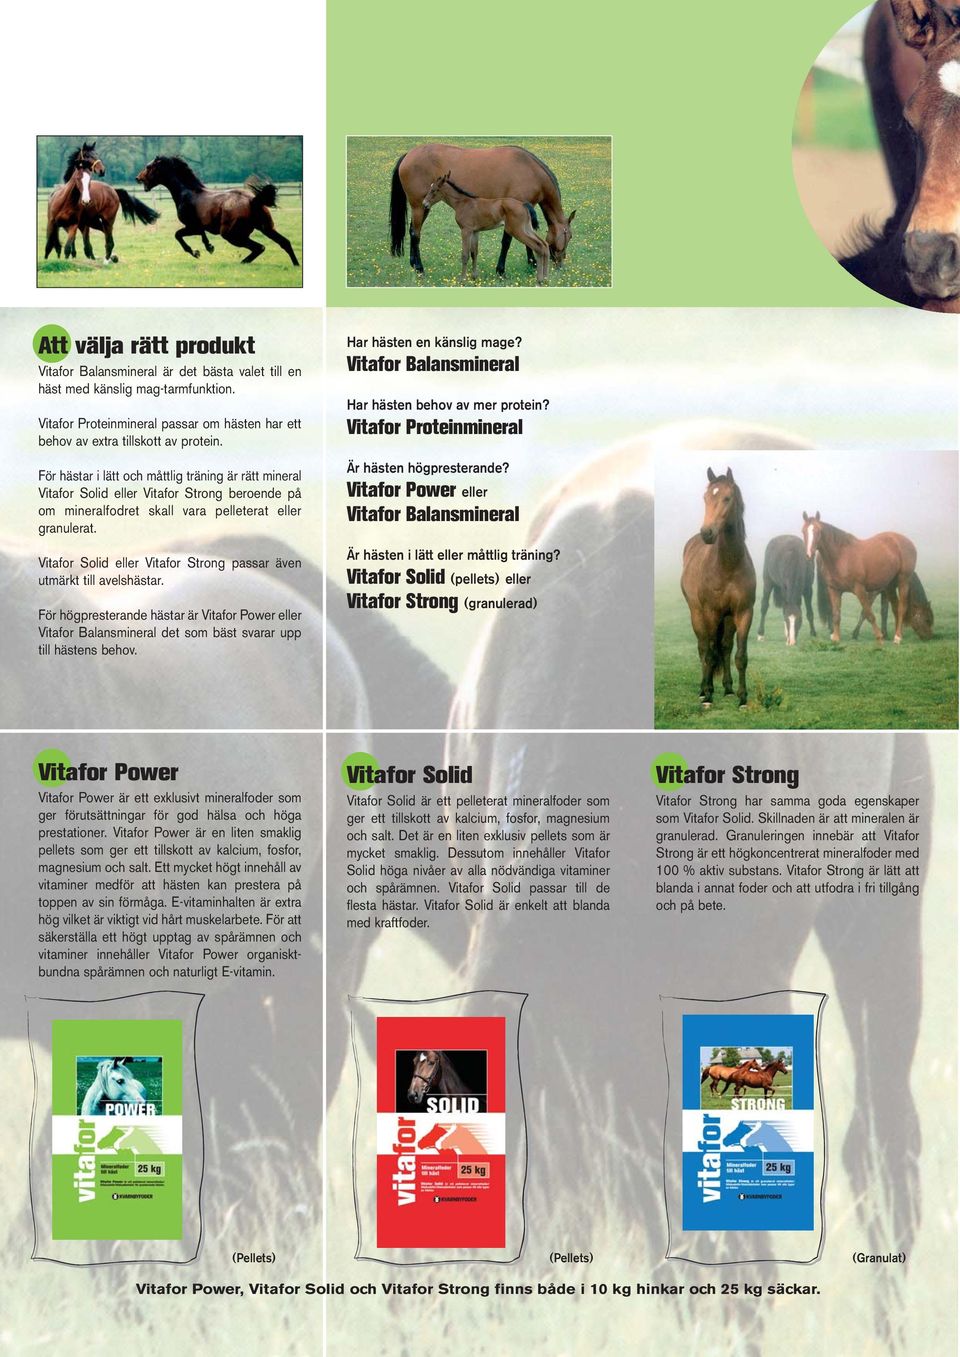 Vitafor Solid eller Vitafor Strong passar även utmärkt till avelshästar. För högpresterande hästar är Vitafor Power eller Vitafor Balansmineral det som bäst svarar upp till hästens behov.